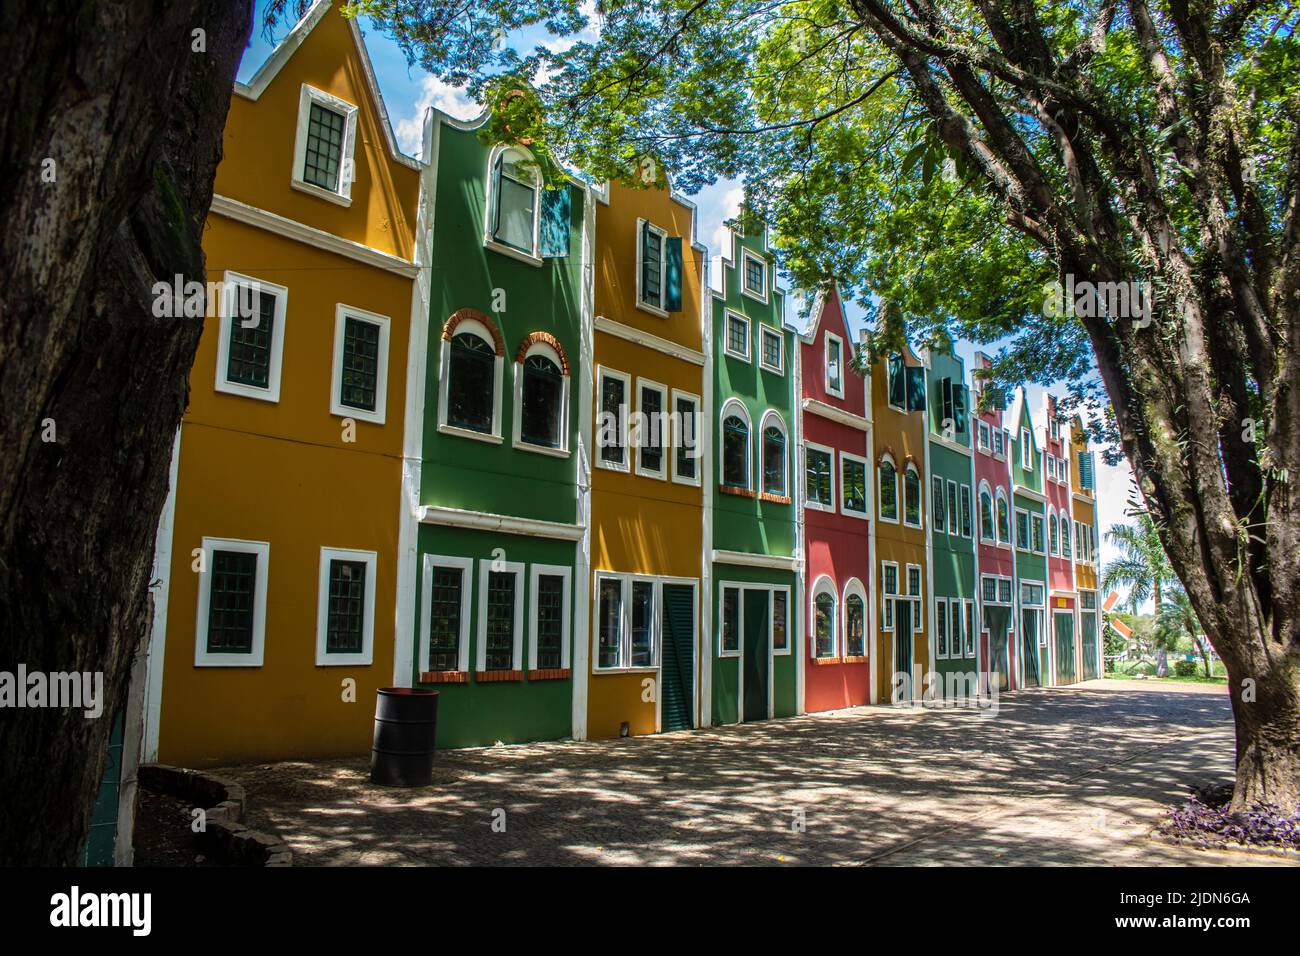 Typisch holländische Gebäude und Häuser auf der Stadt Holambra, ist diese Stadt der wichtigste Blumenproduzent in Brasilien und hat die größte Einwandererkolonie von t Stockfoto